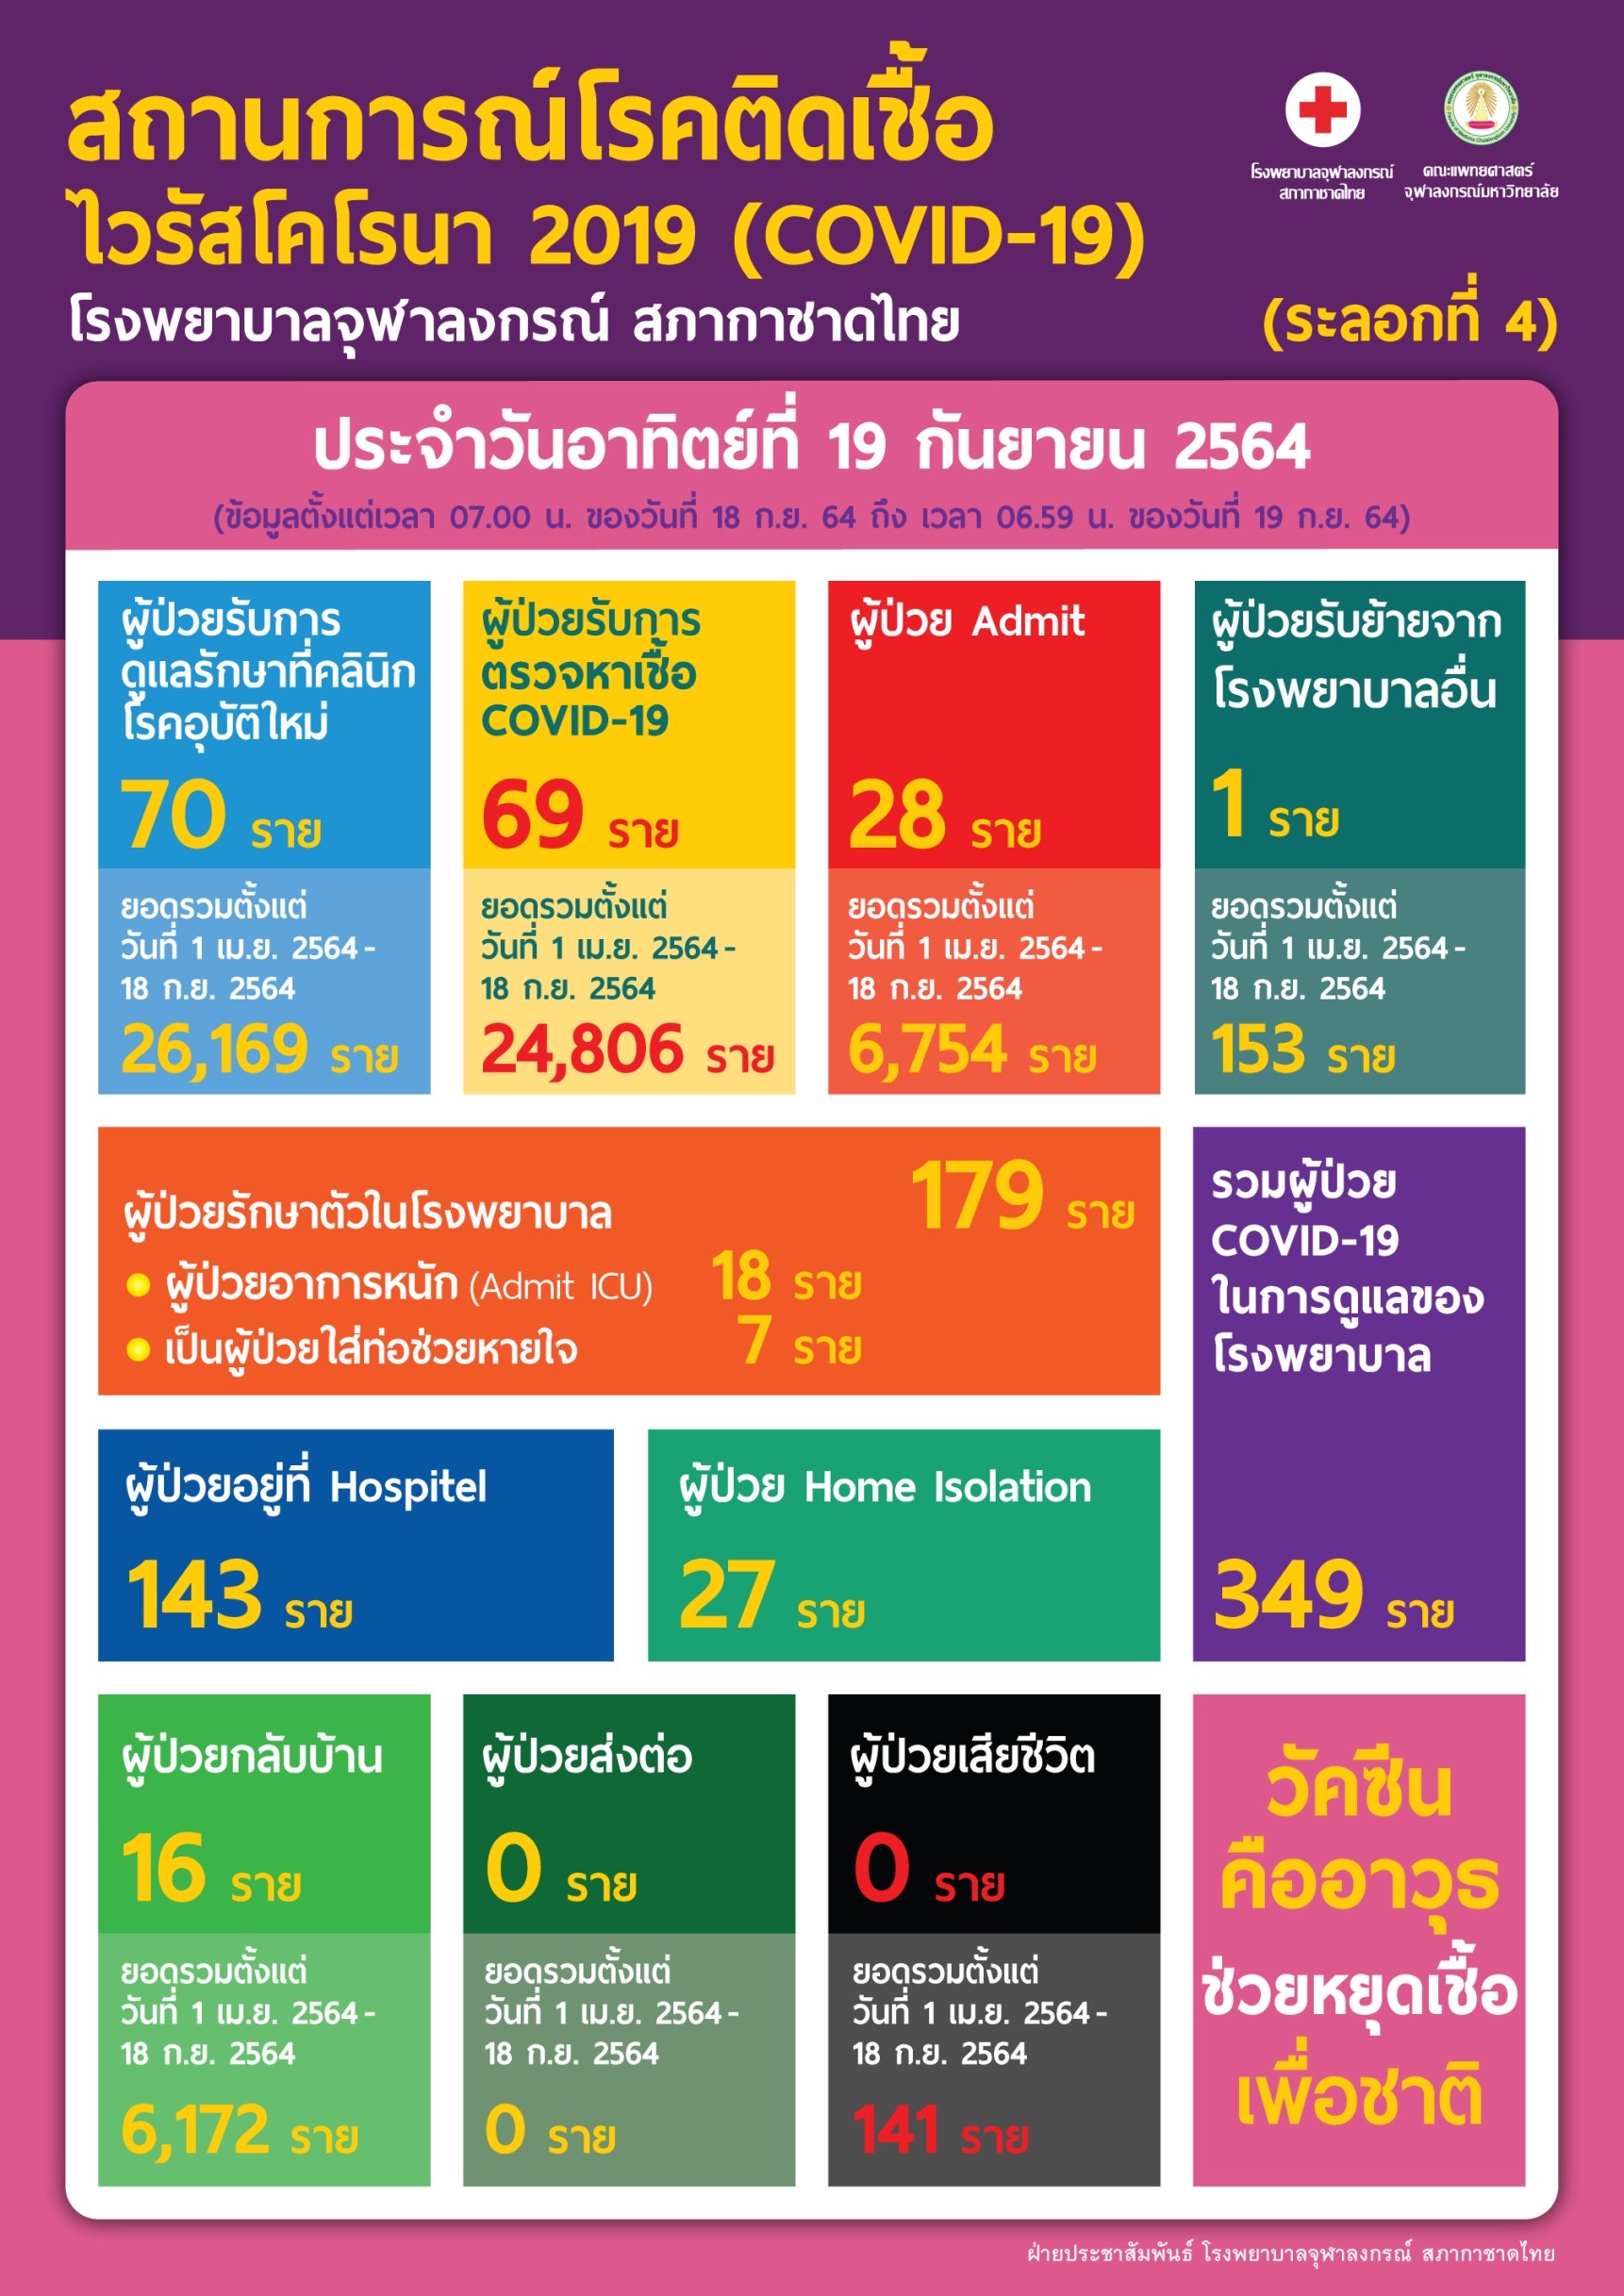 สถานการณ์โรคติดเชื้อไวรัสโคโรนา 2019 (COVID-19) (ระลอกที่ 4) โรงพยาบาลจุฬาลงกรณ์ สภากาชาดไทย ประจำวันอาทิตย์ที่ 19 กันยายน 2564